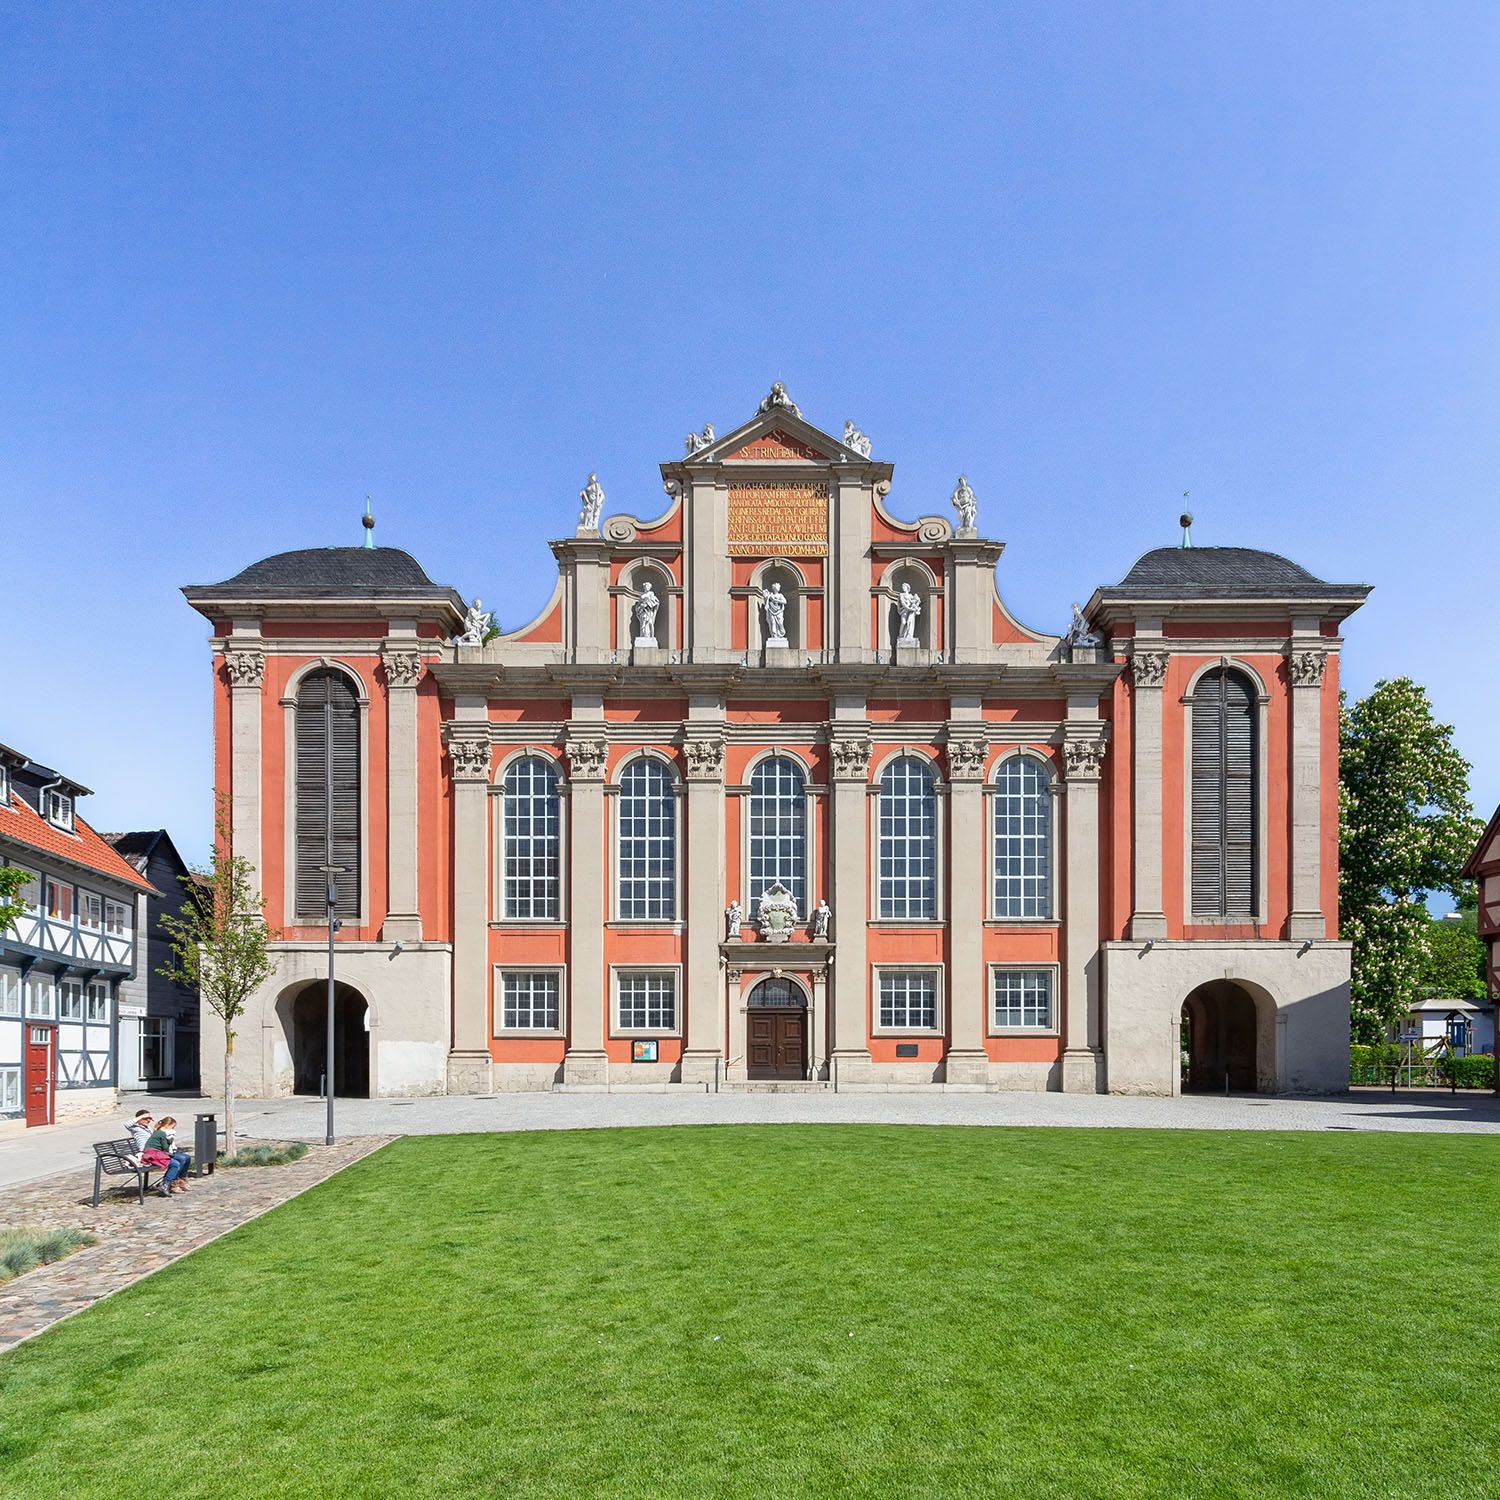 Westfassade der St. Trinitatis-Kirche am Holzmarkt in Wolfenbüttel, einem ehemaligen Stadttor das im Barock zu einer Kirche umgebaut wurde.